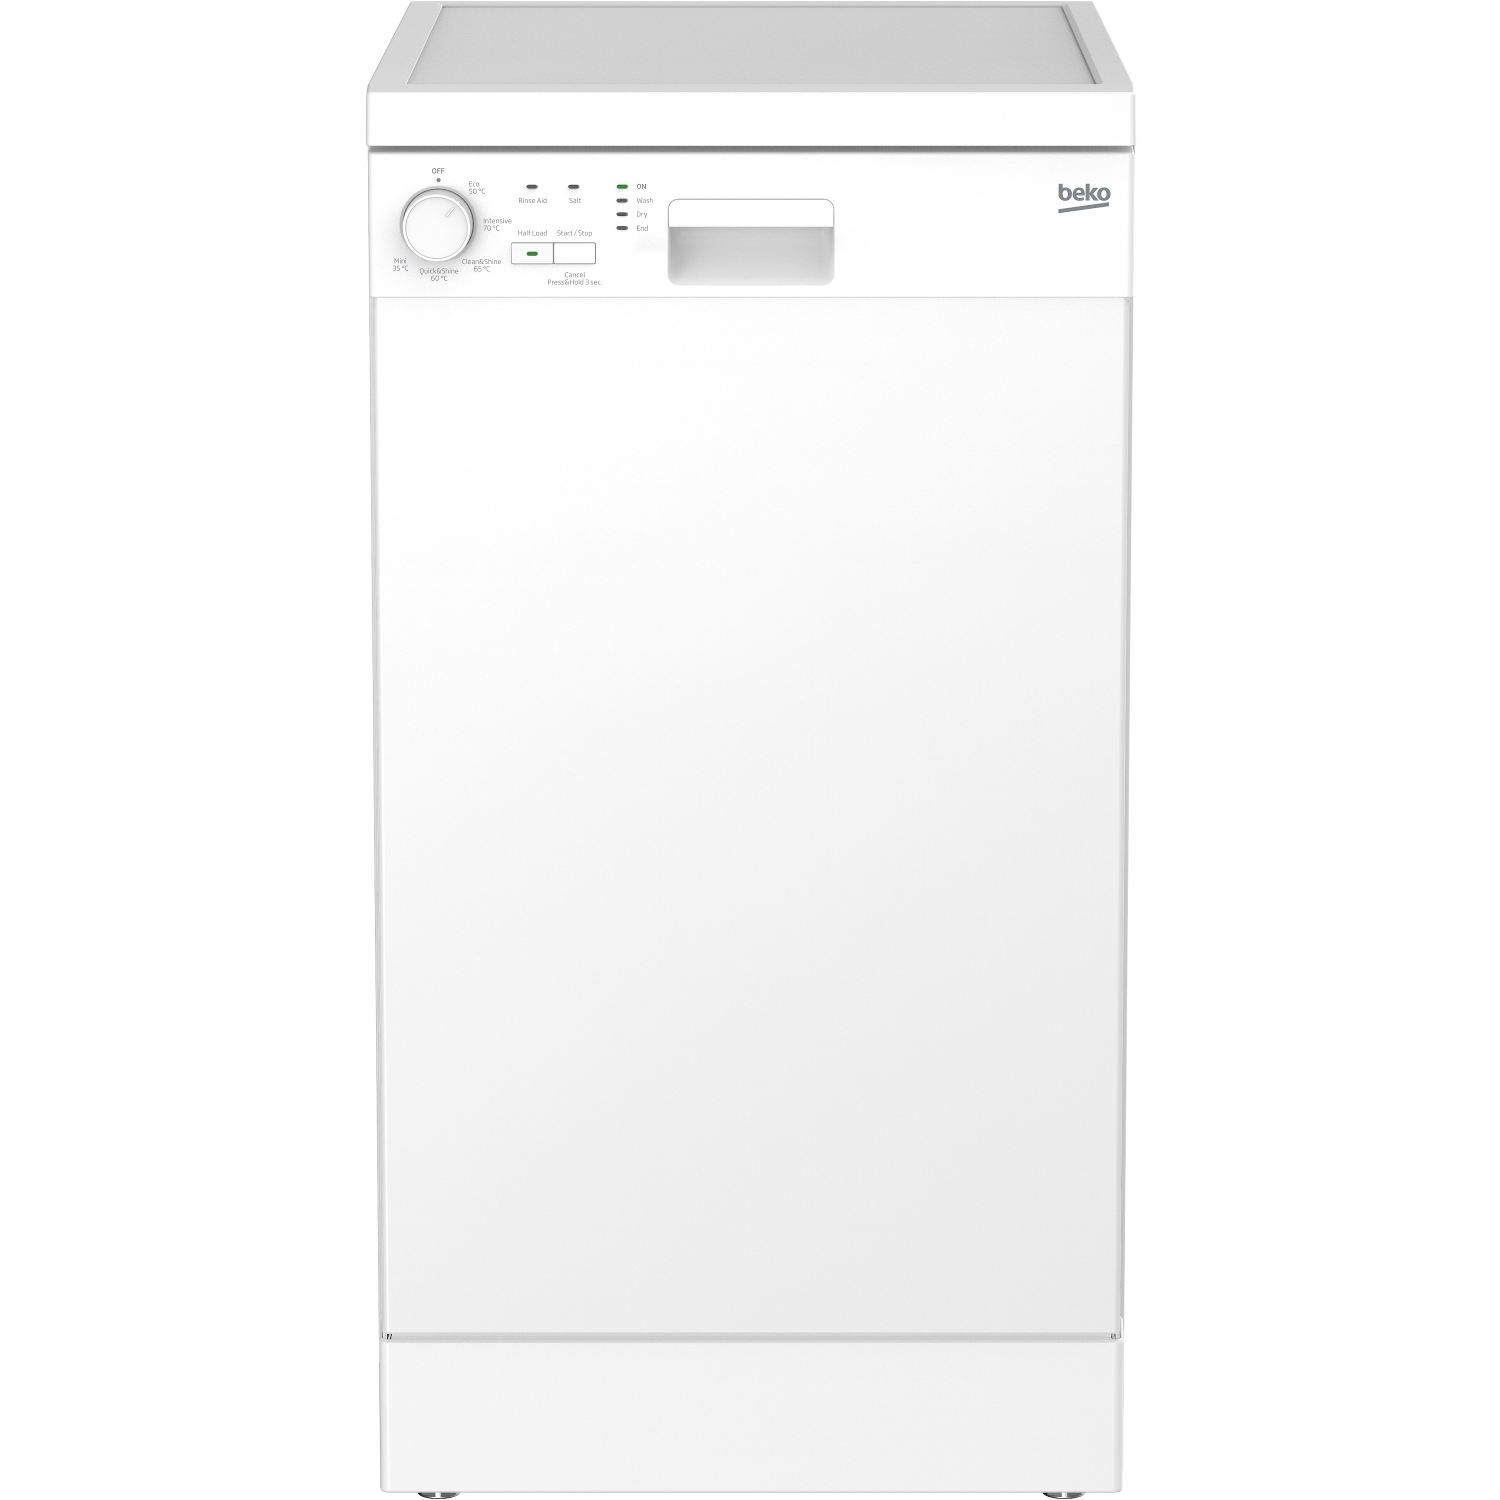 Beko Slimline Dishwasher - White - A+ Rated - 0